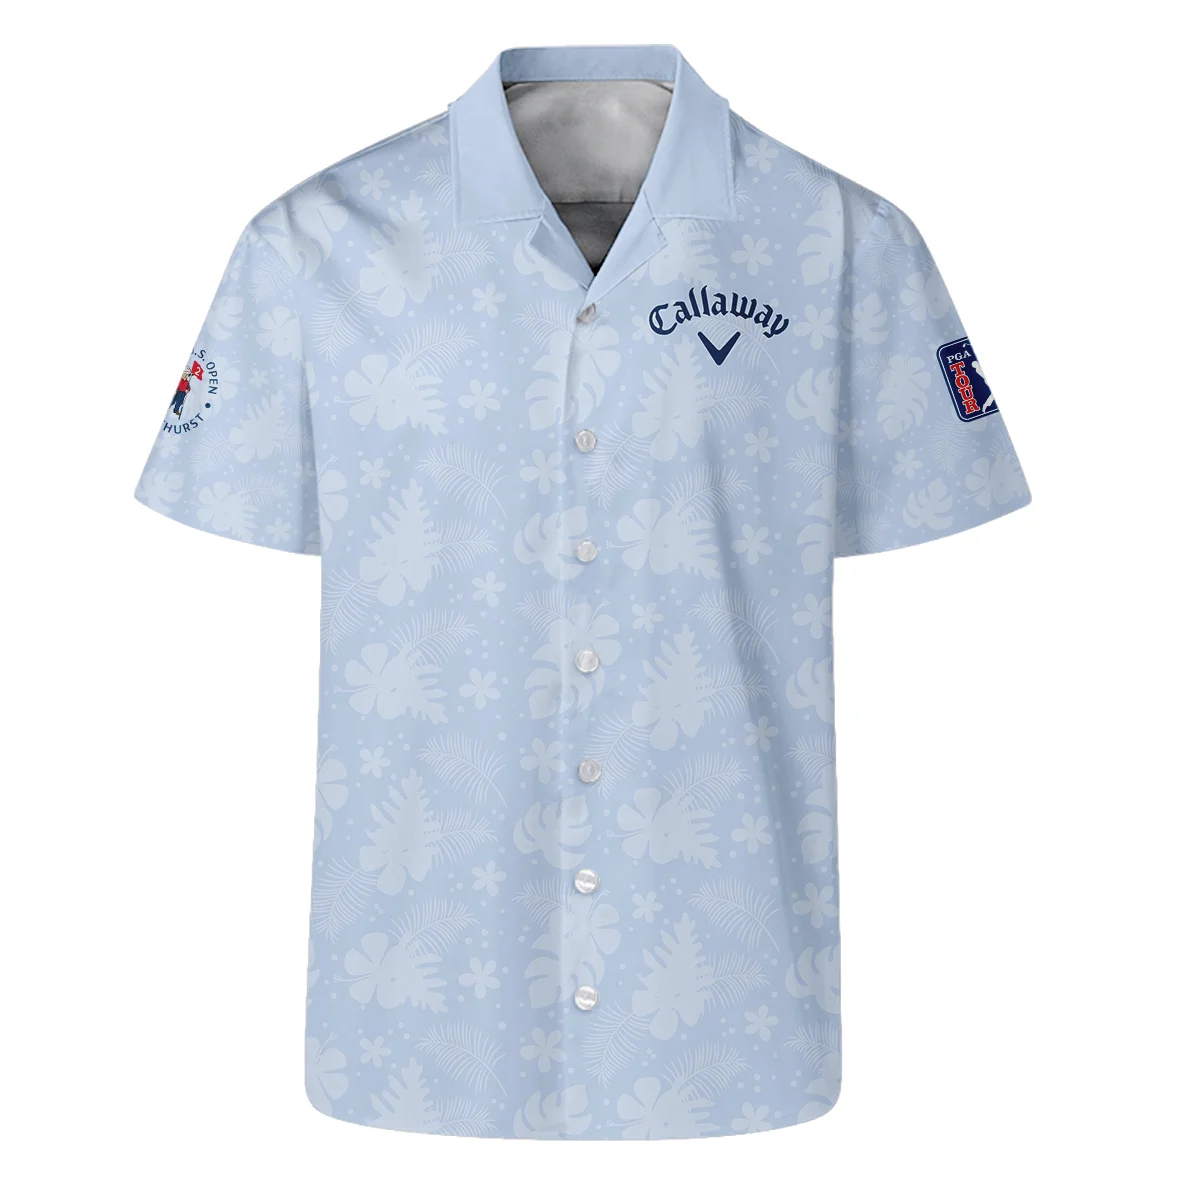 124th U.S. Open Pinehurst Callaway Golf Hoodie Shirt Light Blue Pastel Floral Hawaiian Pattern All Over Print Hoodie Shirt